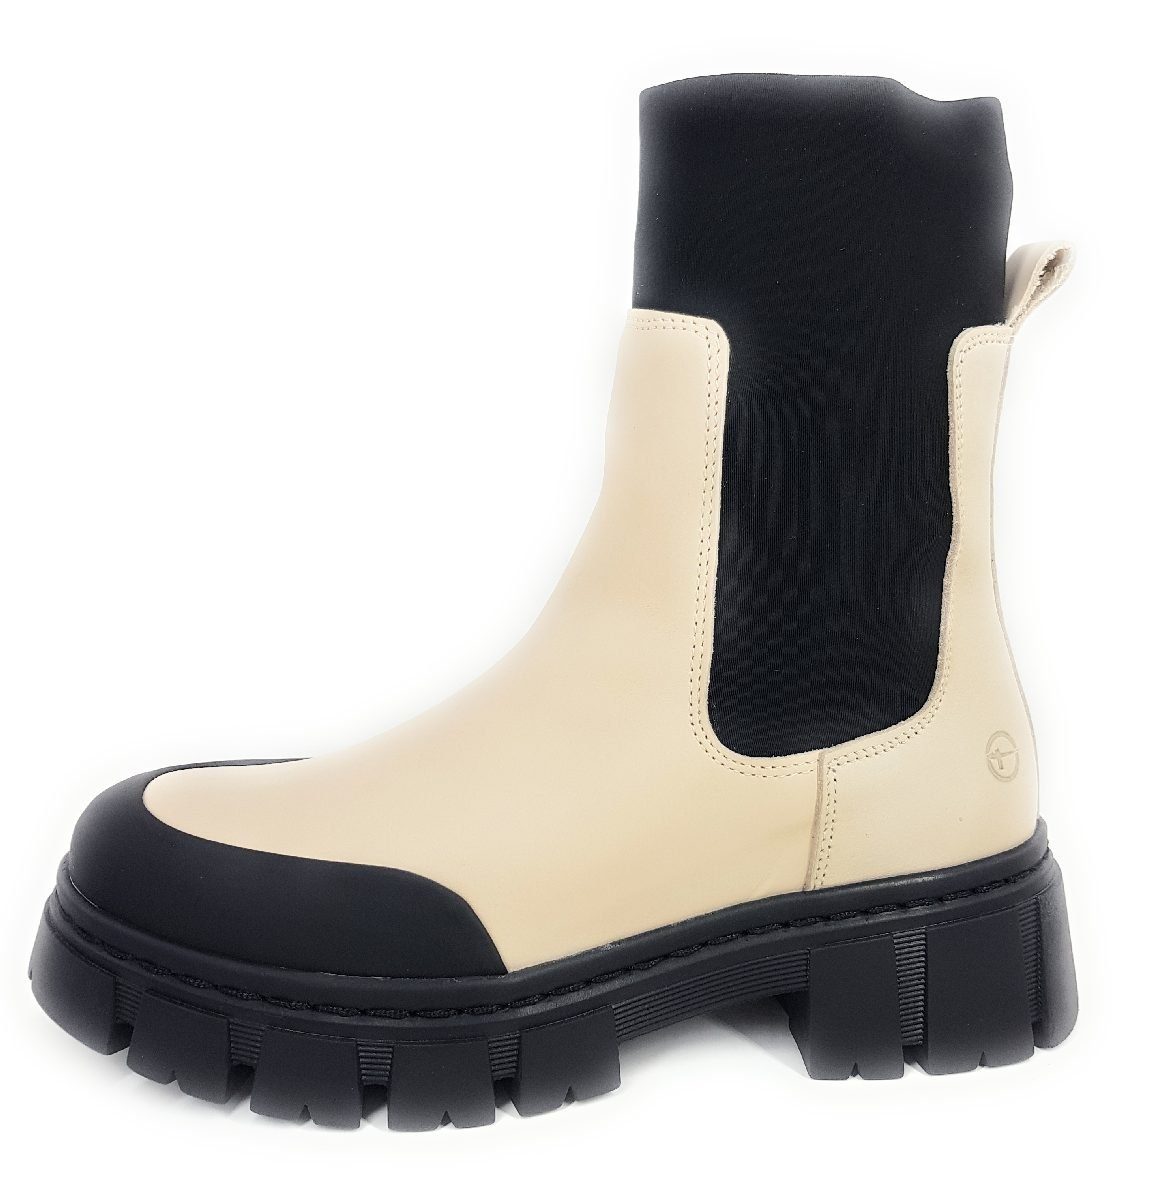 Tamaris »Boots« Stiefelette online kaufen | OTTO